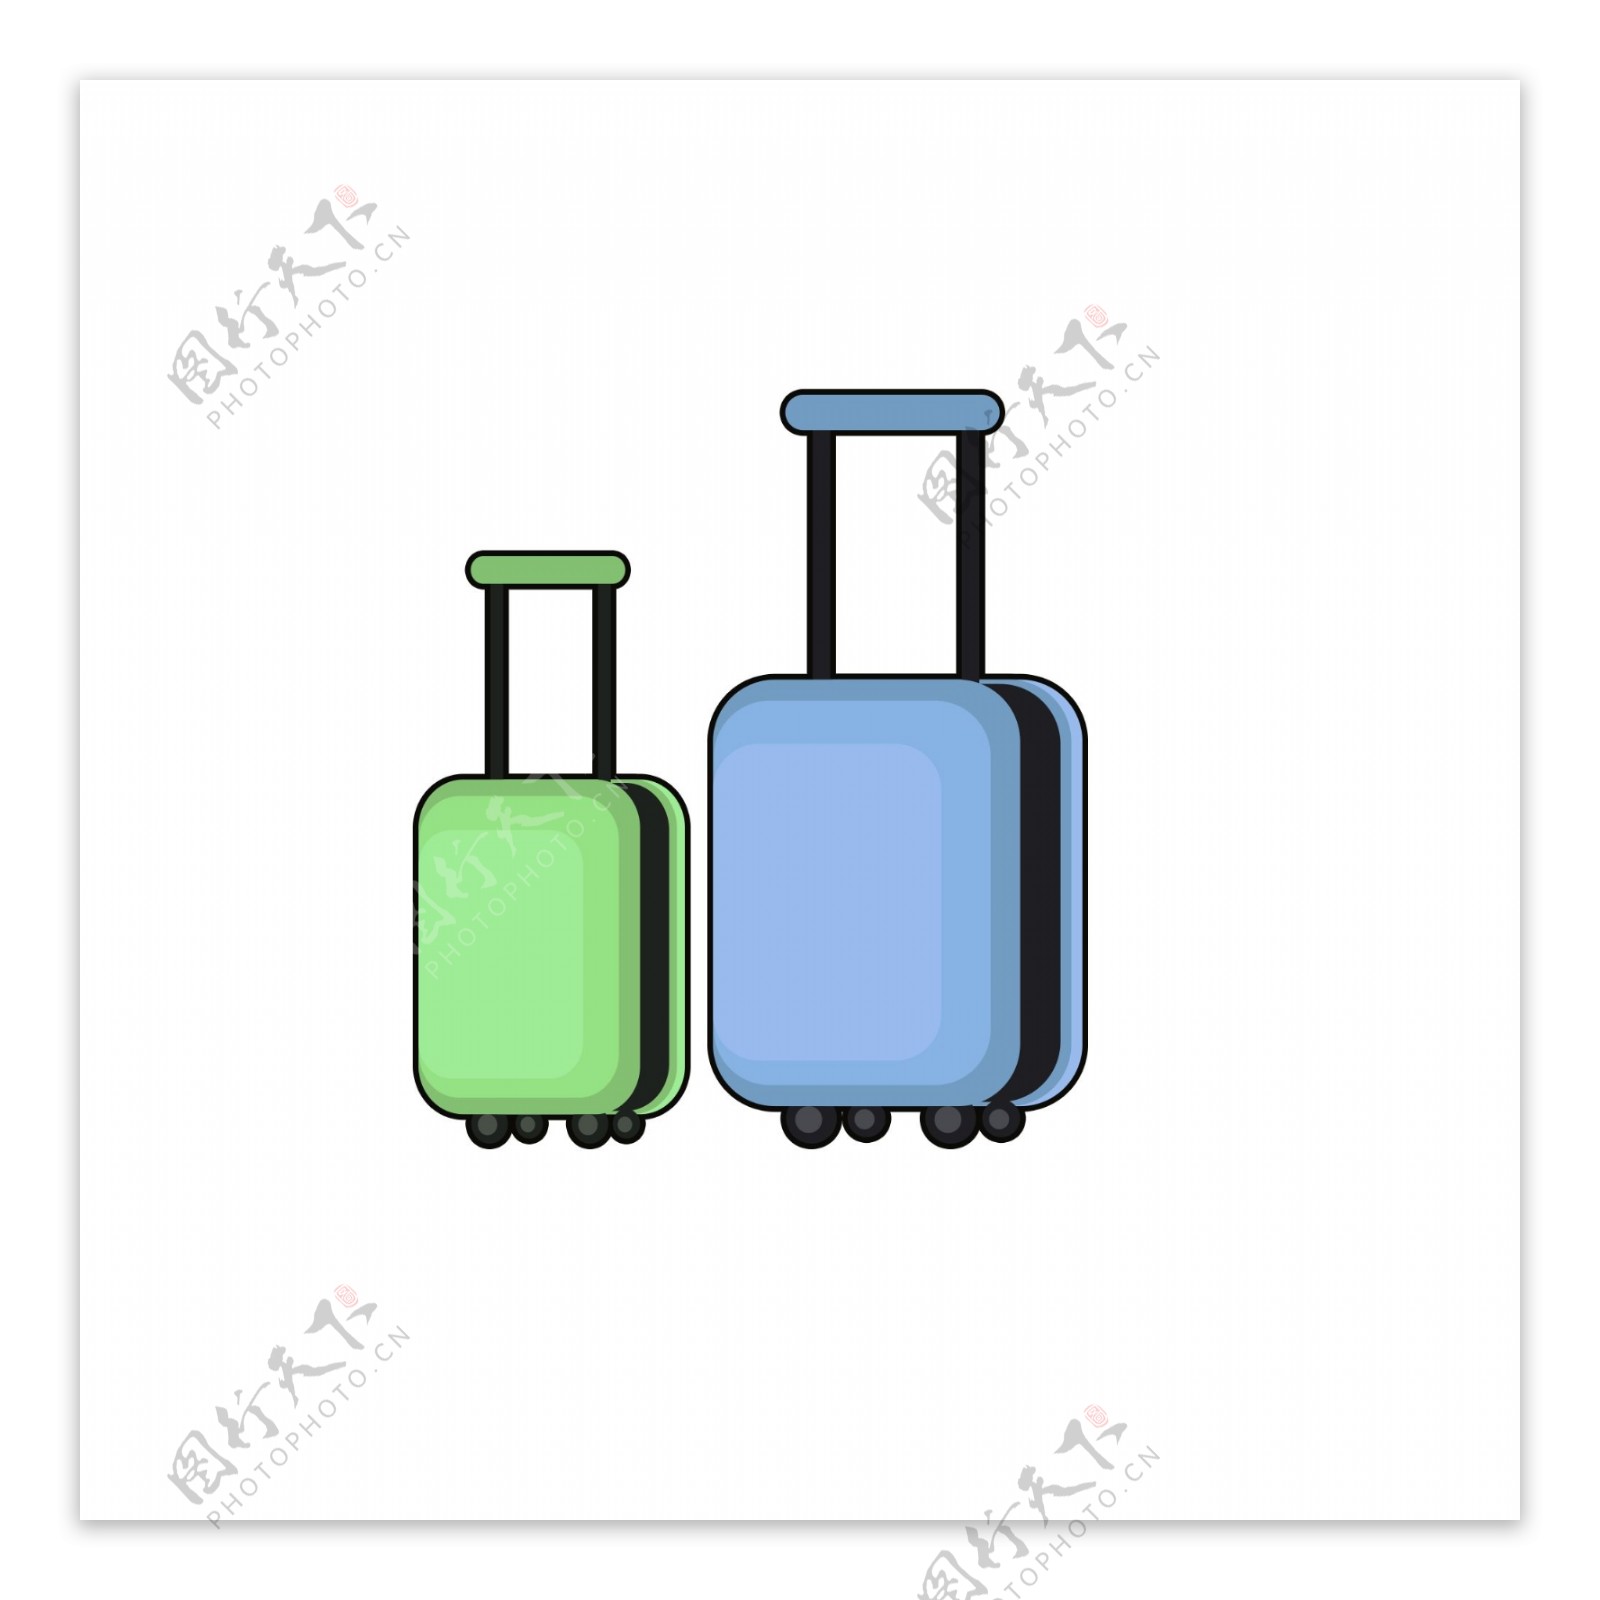 彩色行李箱手提装饰素材设计